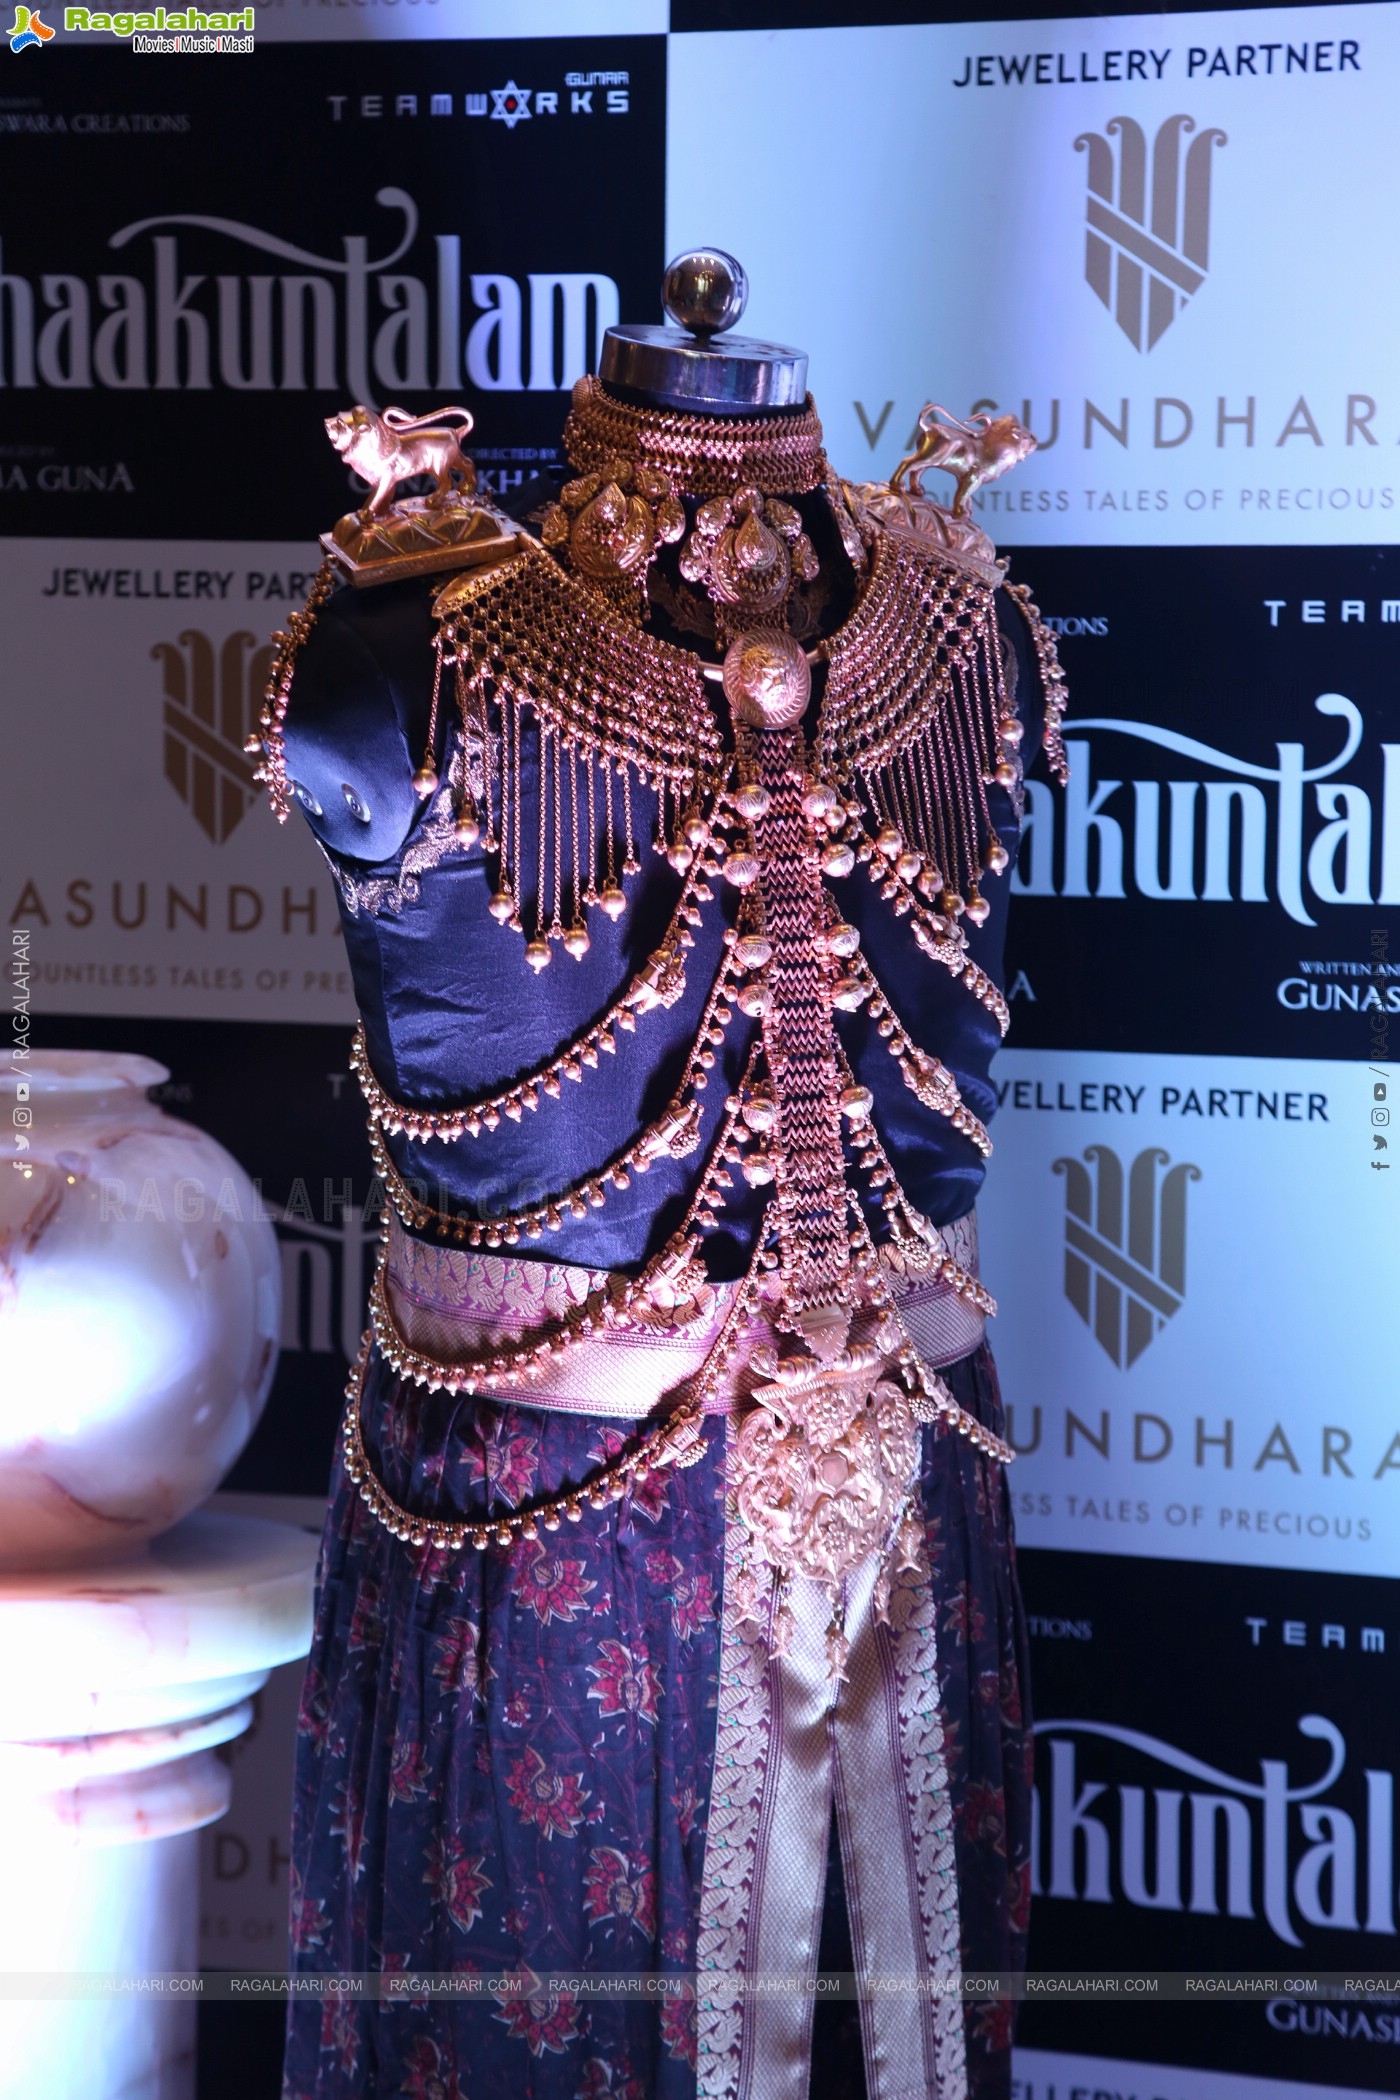 The unveiling of Shaakuntala's Regal Queen Look